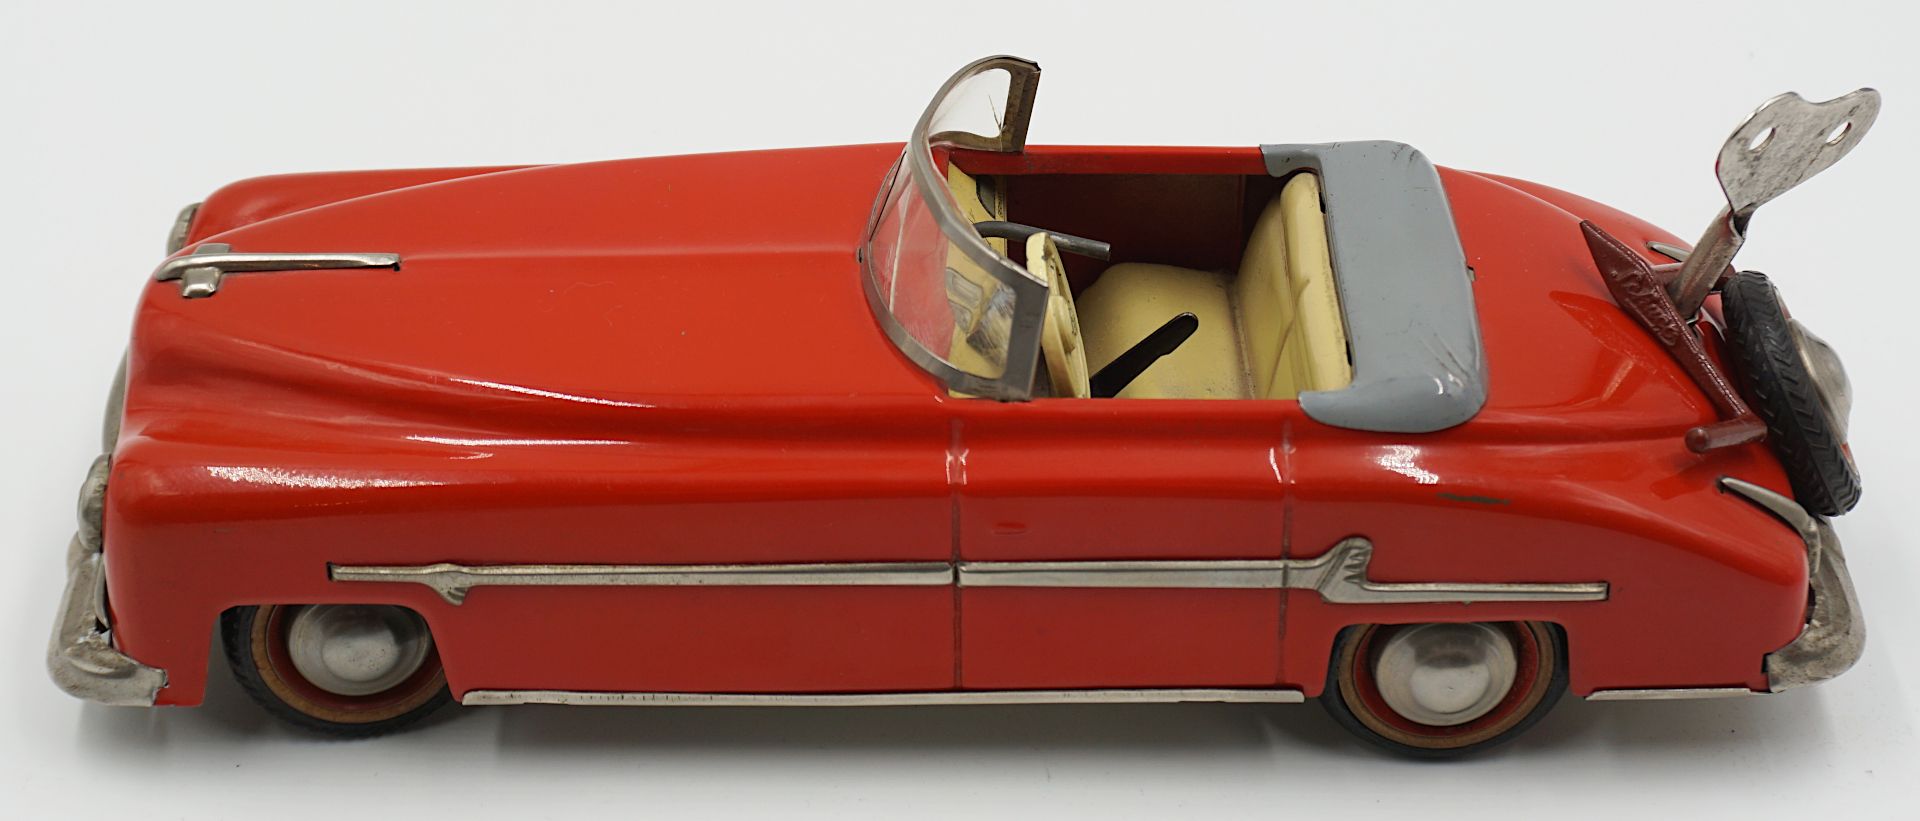 1 Aufziehauto DISTLER "Packard Cabrio" wohl 1950er Jahre, rot